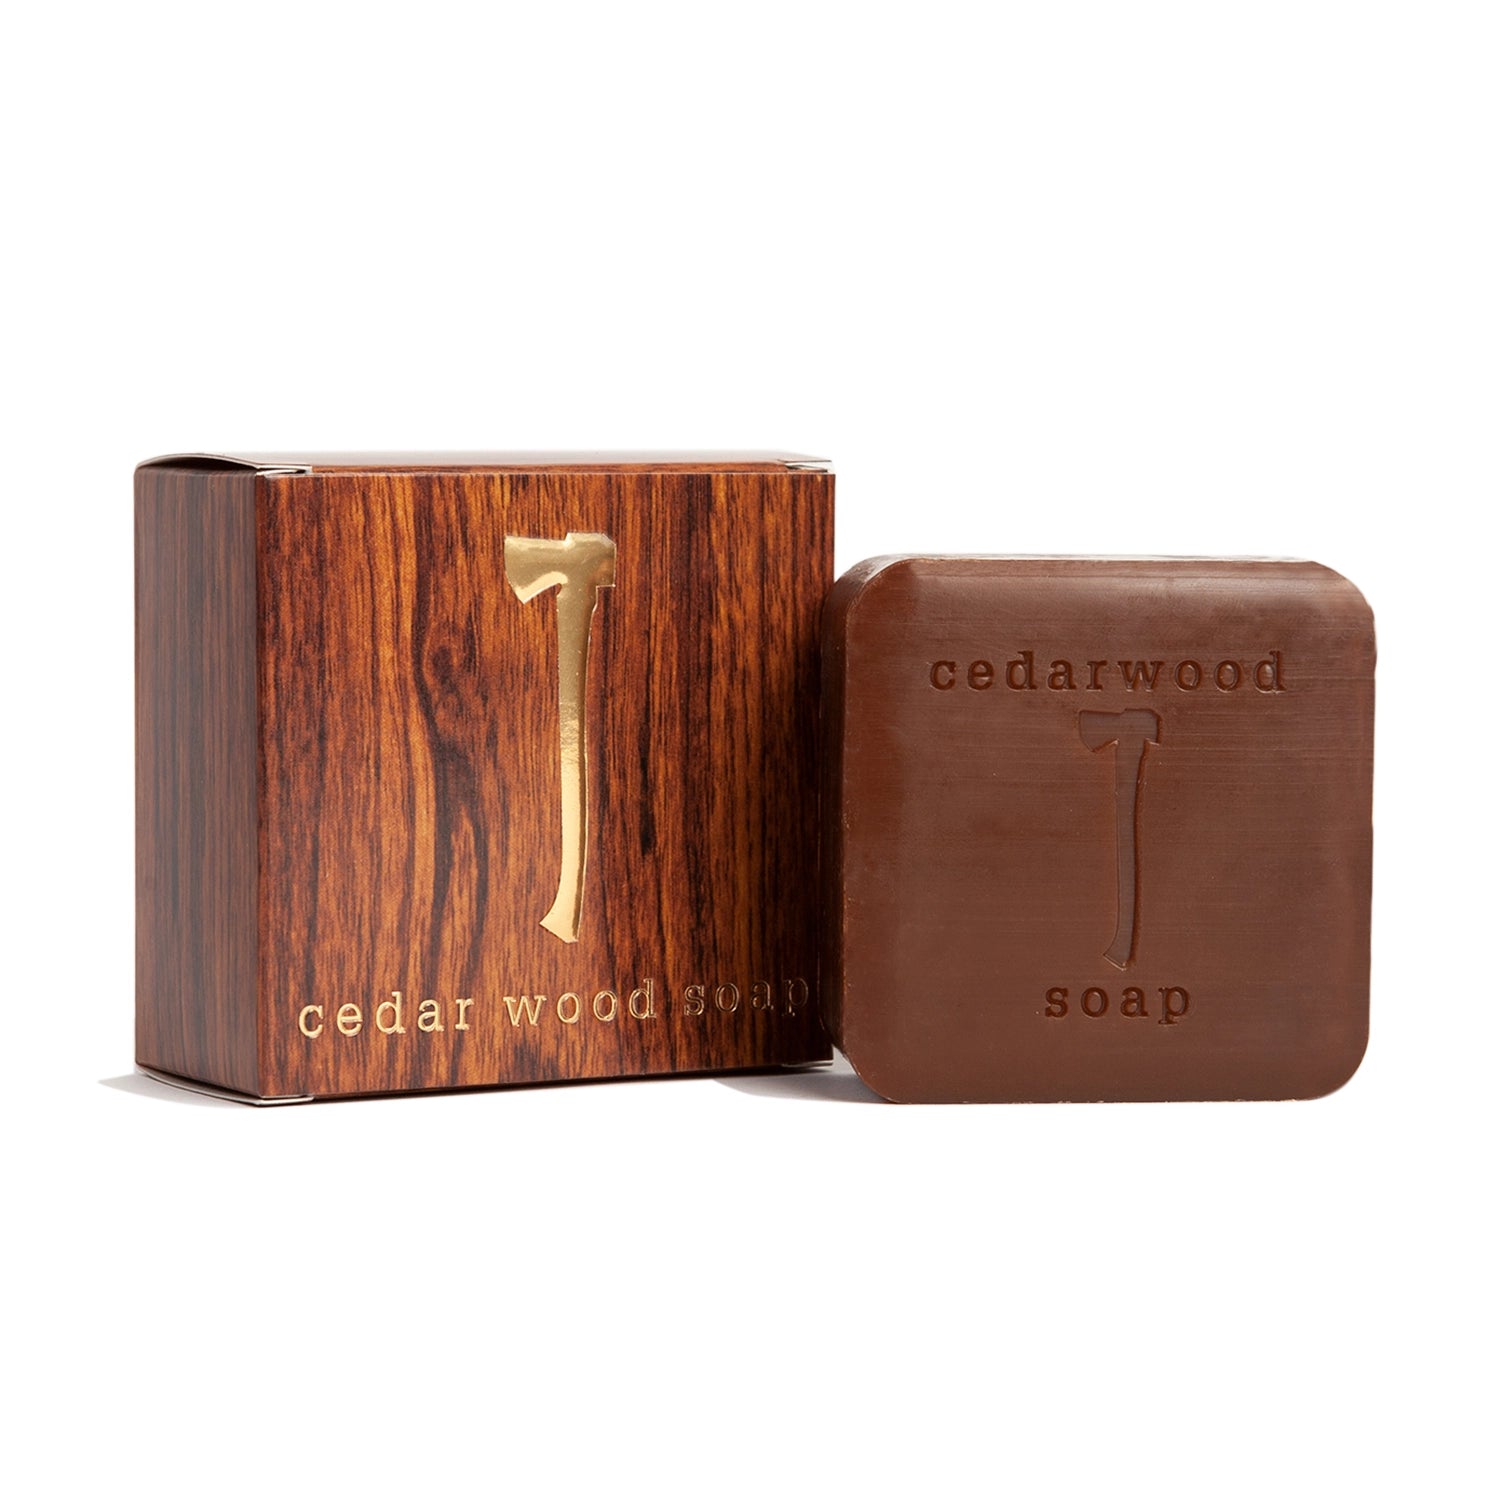 Mistral Men's Natural Hand Soap, Cedarwood Marine